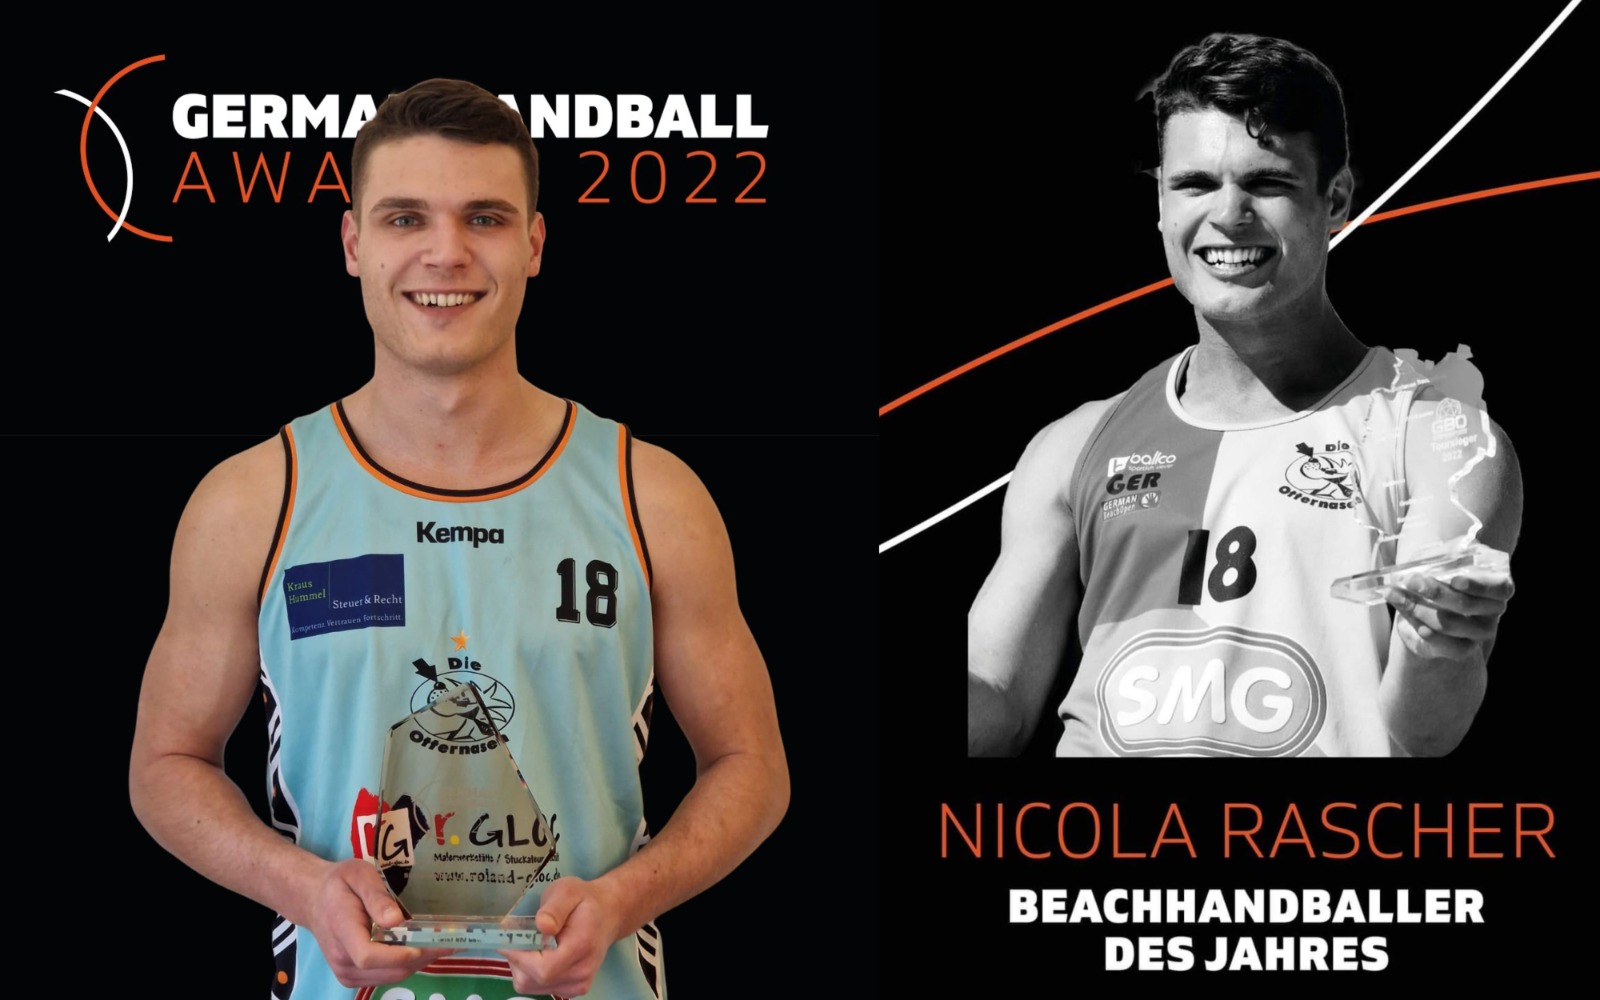 Nicola Rascher: Beachhandballer des Jahres